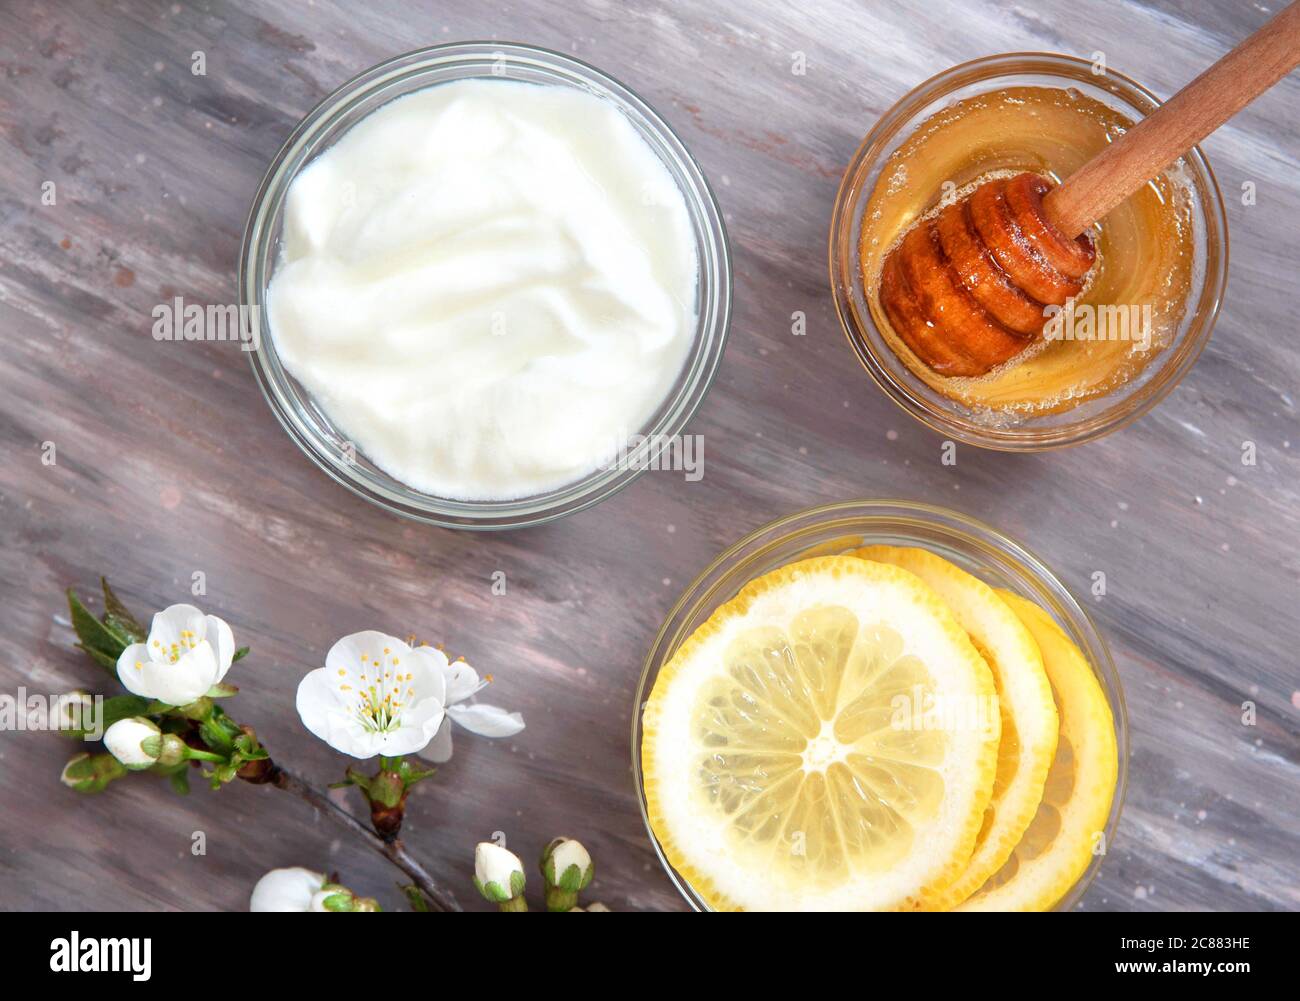 Zutaten für hausgemachte Gesichtsmaske Honig, Zitrone, Joghurt  Stockfotografie - Alamy